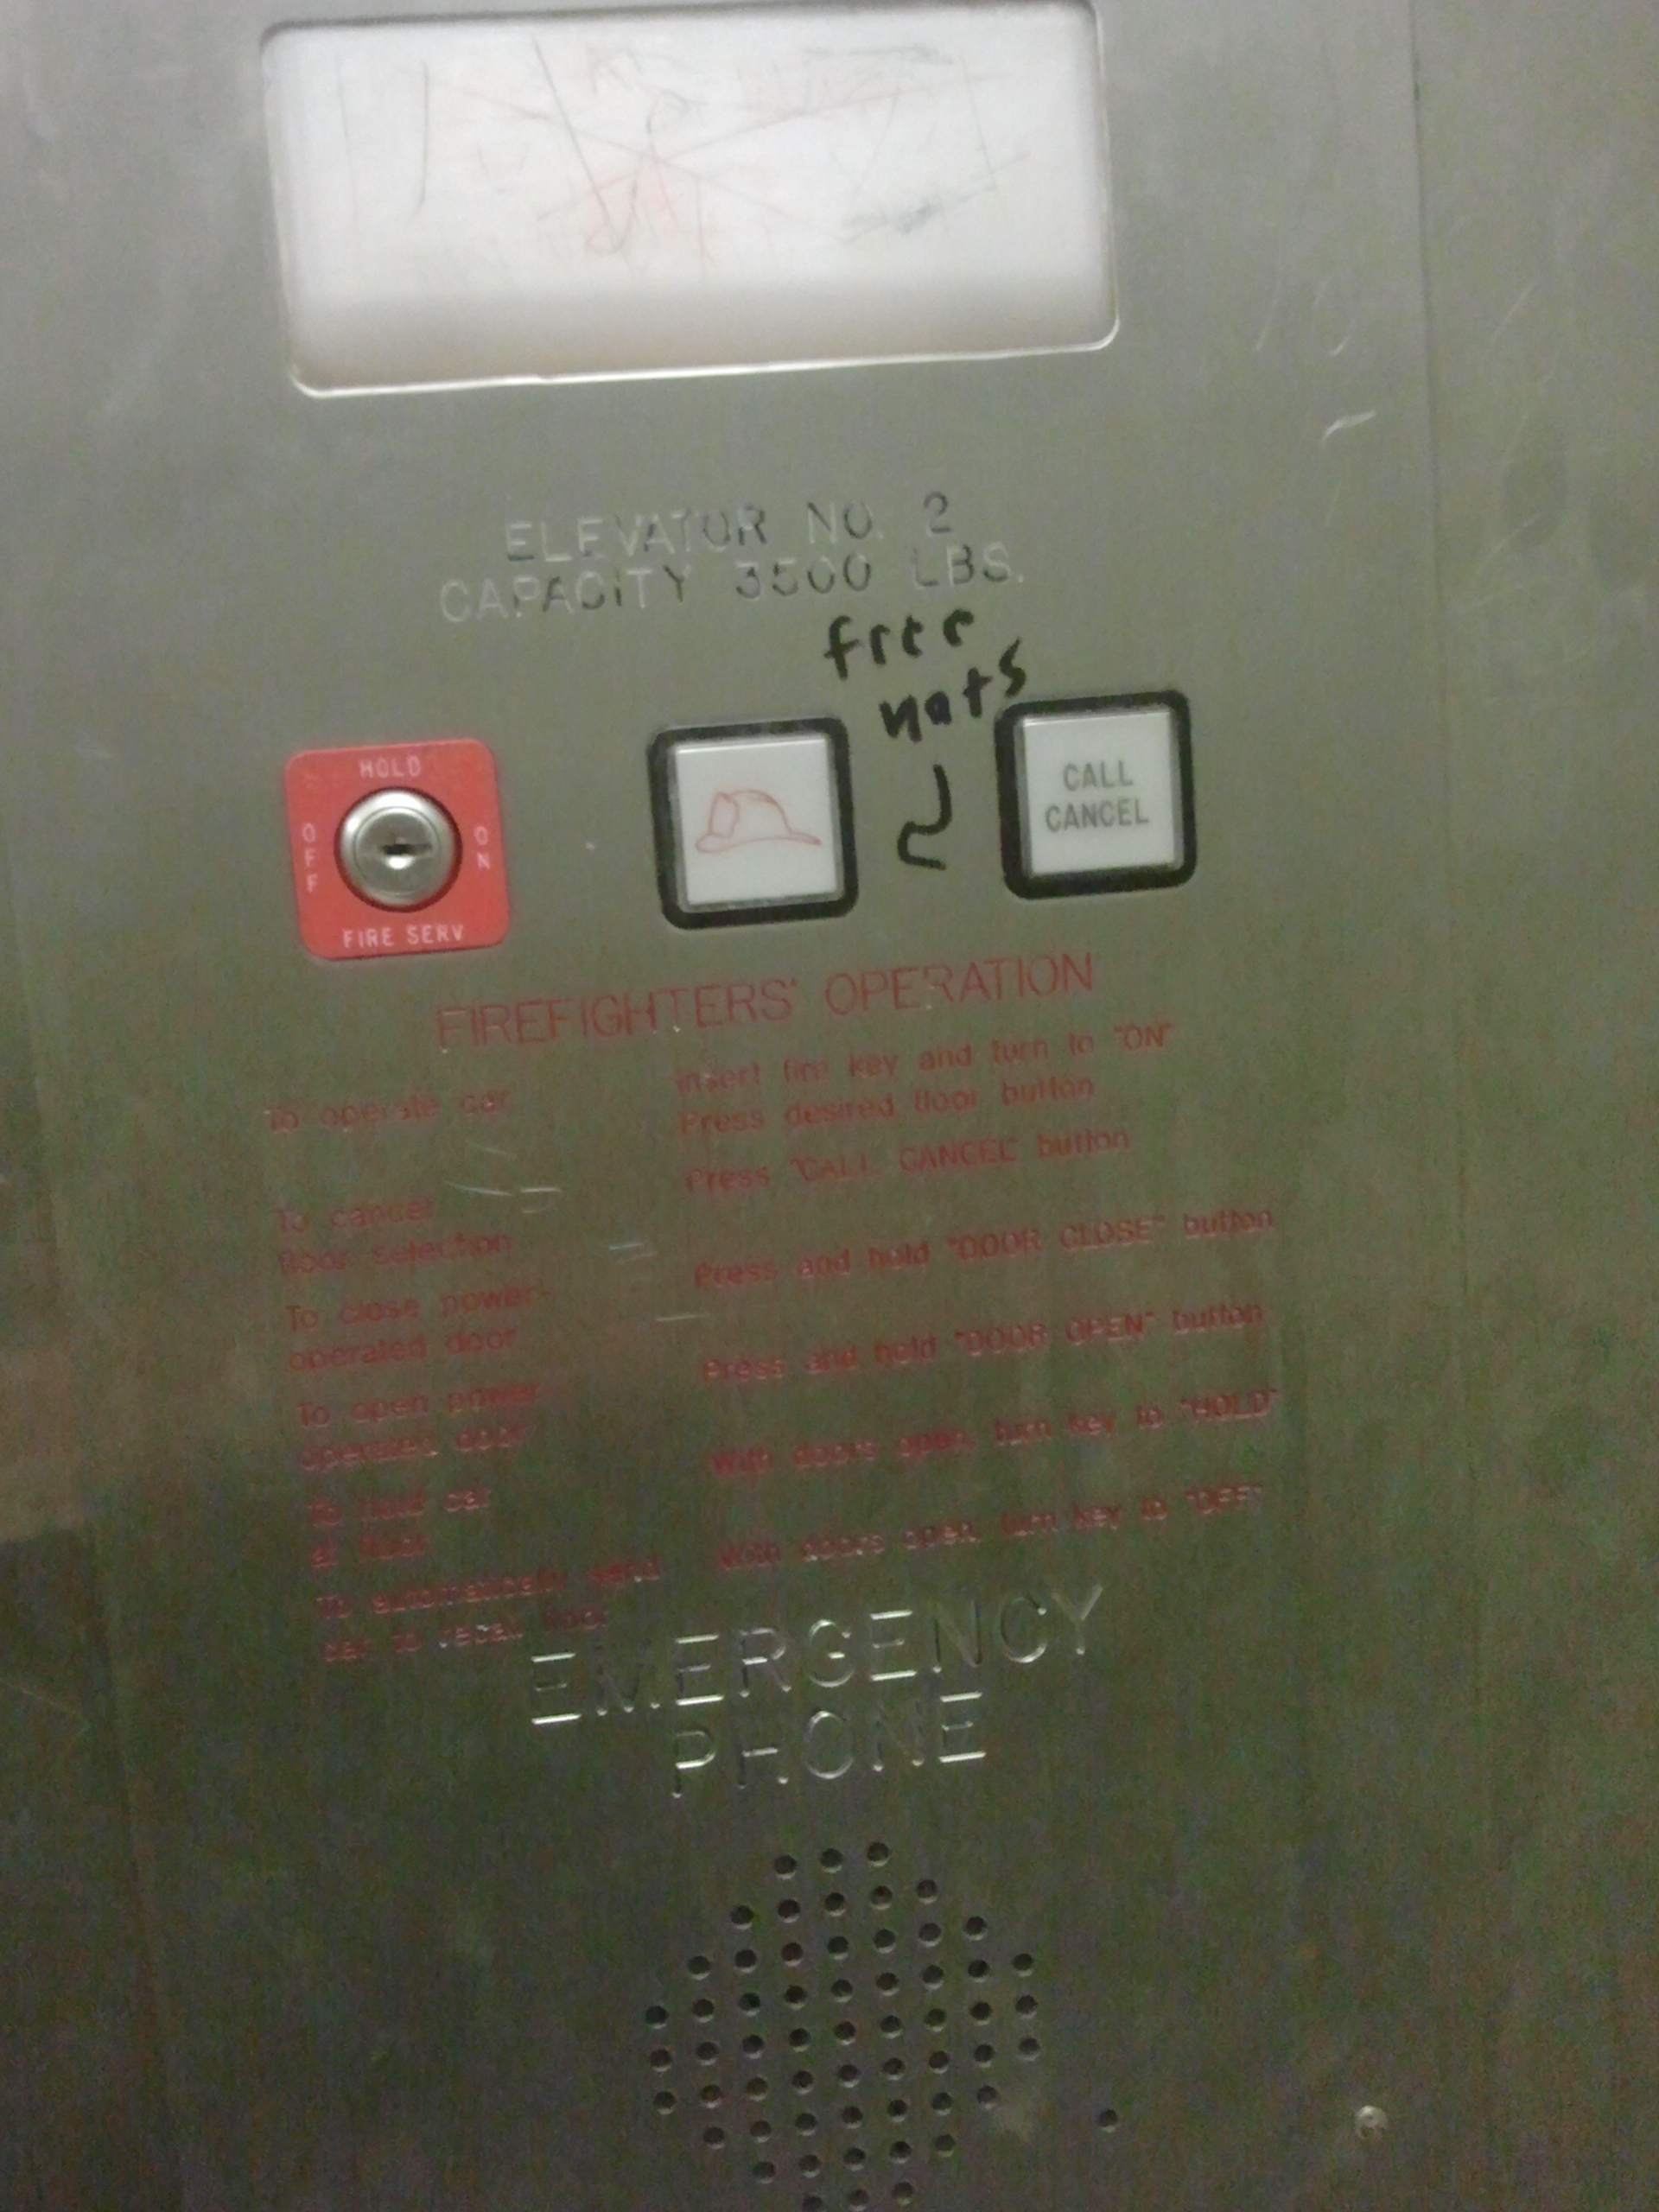 Free hats in elevator? Seems legit.